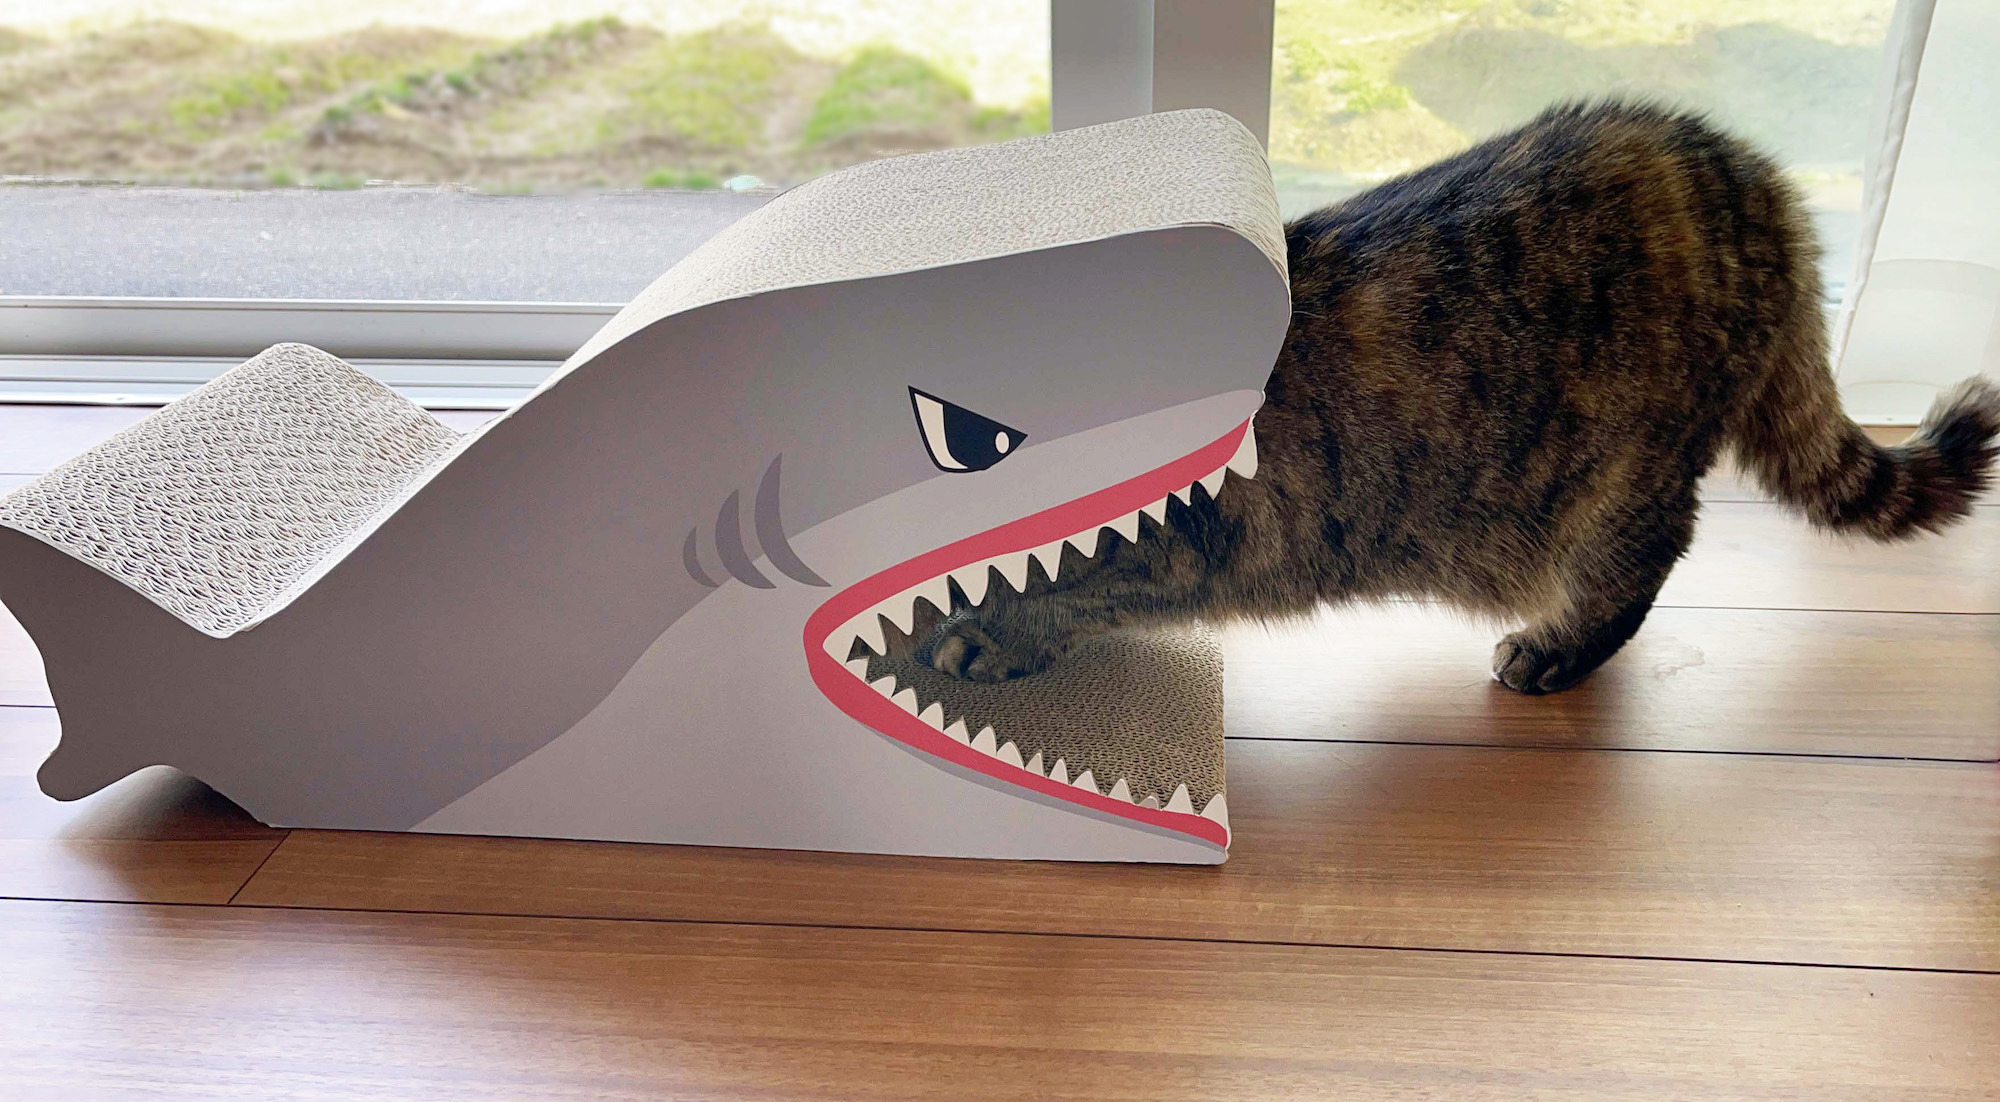 サメ型爪とぎやマタタビが入った動く魚のぬいぐるみ コメリオリジナルの新猫用アイテム発売 動物のリアルを伝えるwebメディア Reanimal